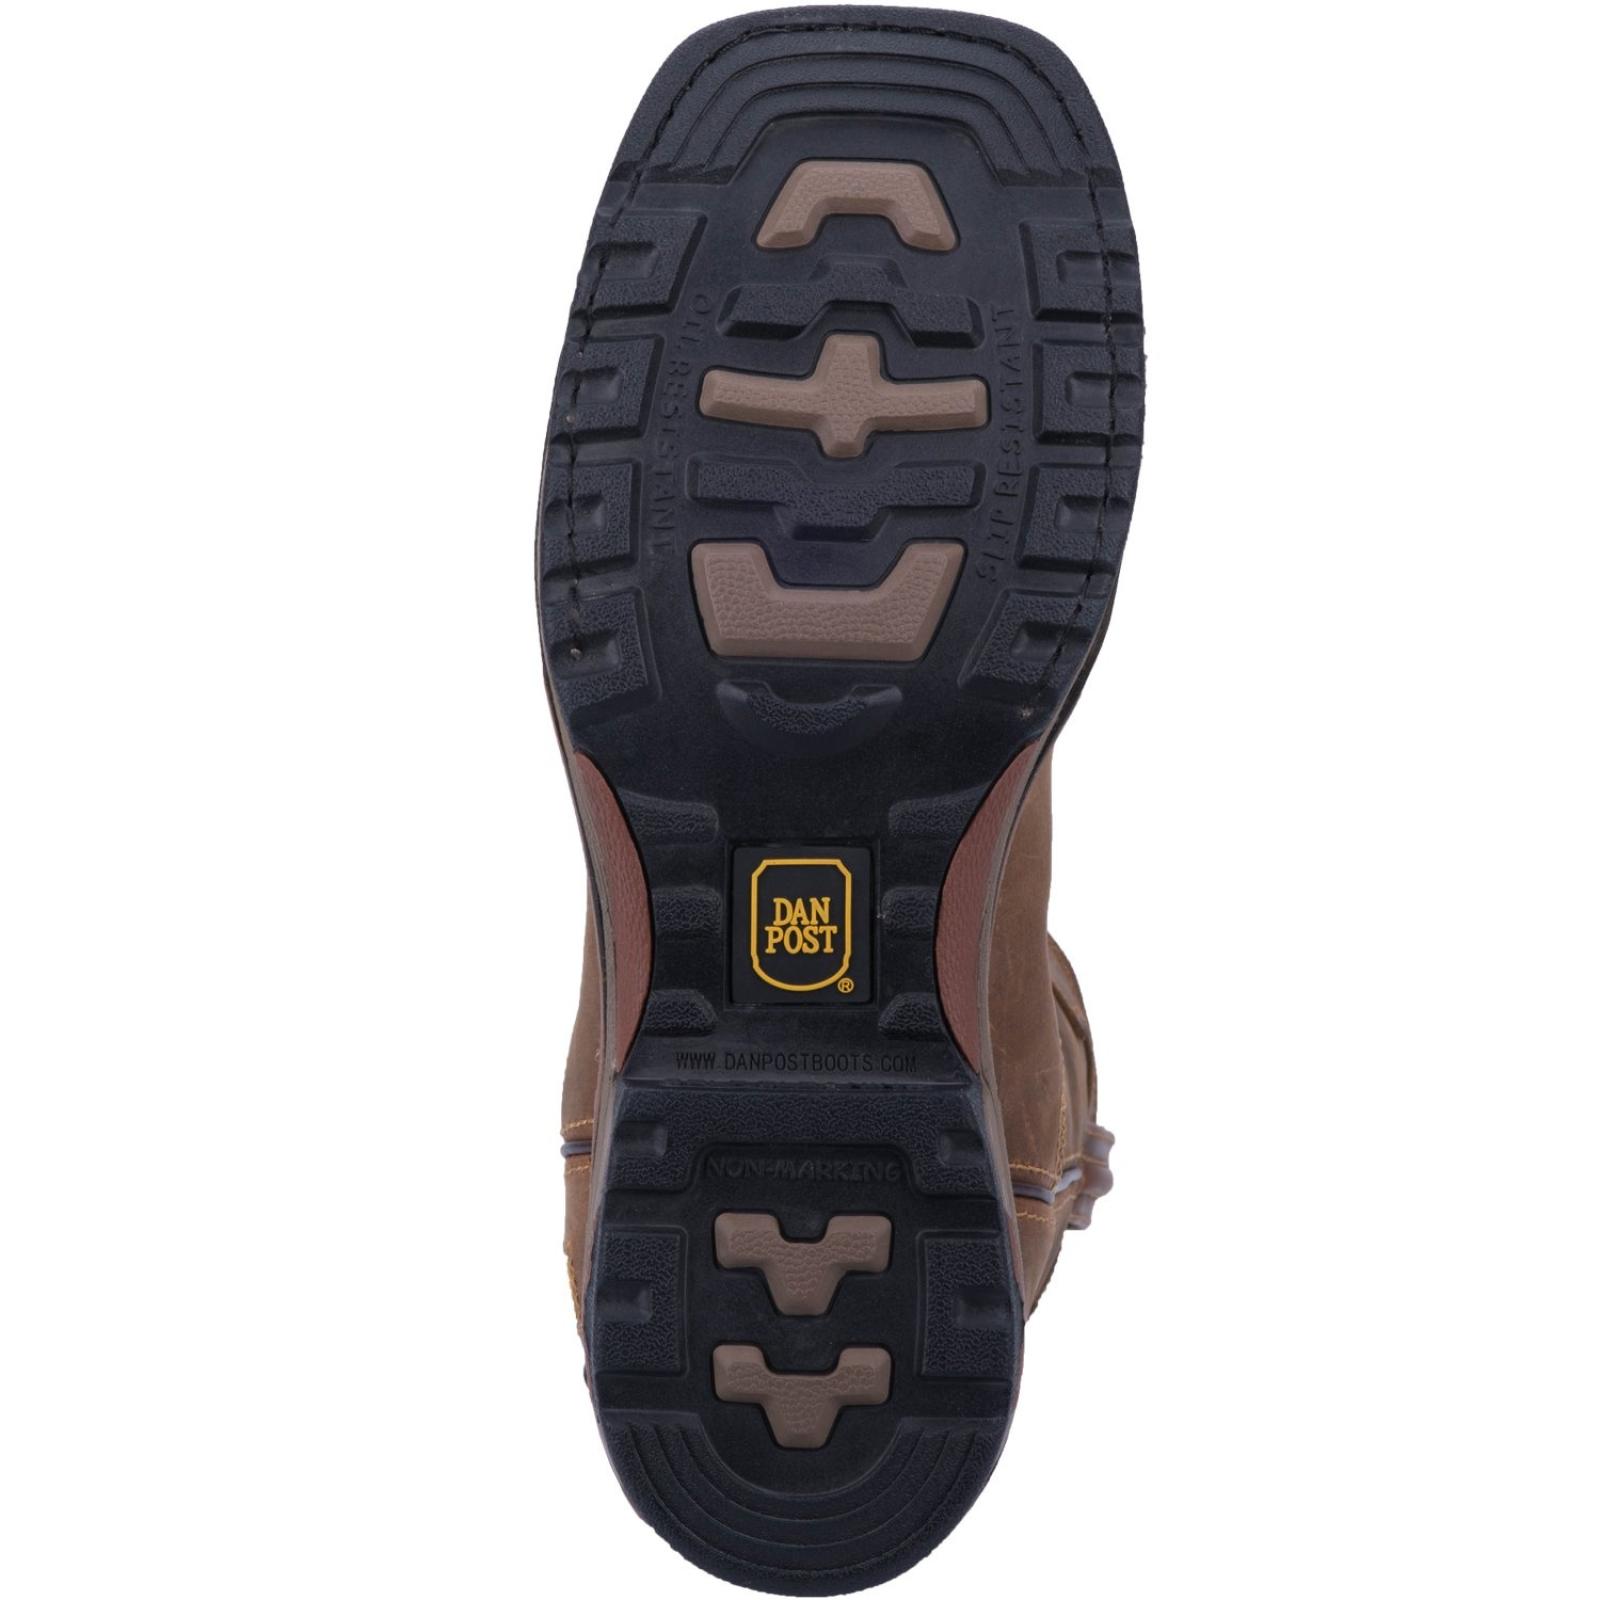 Dan Post Blayde Waterproof Leather Boot Sole